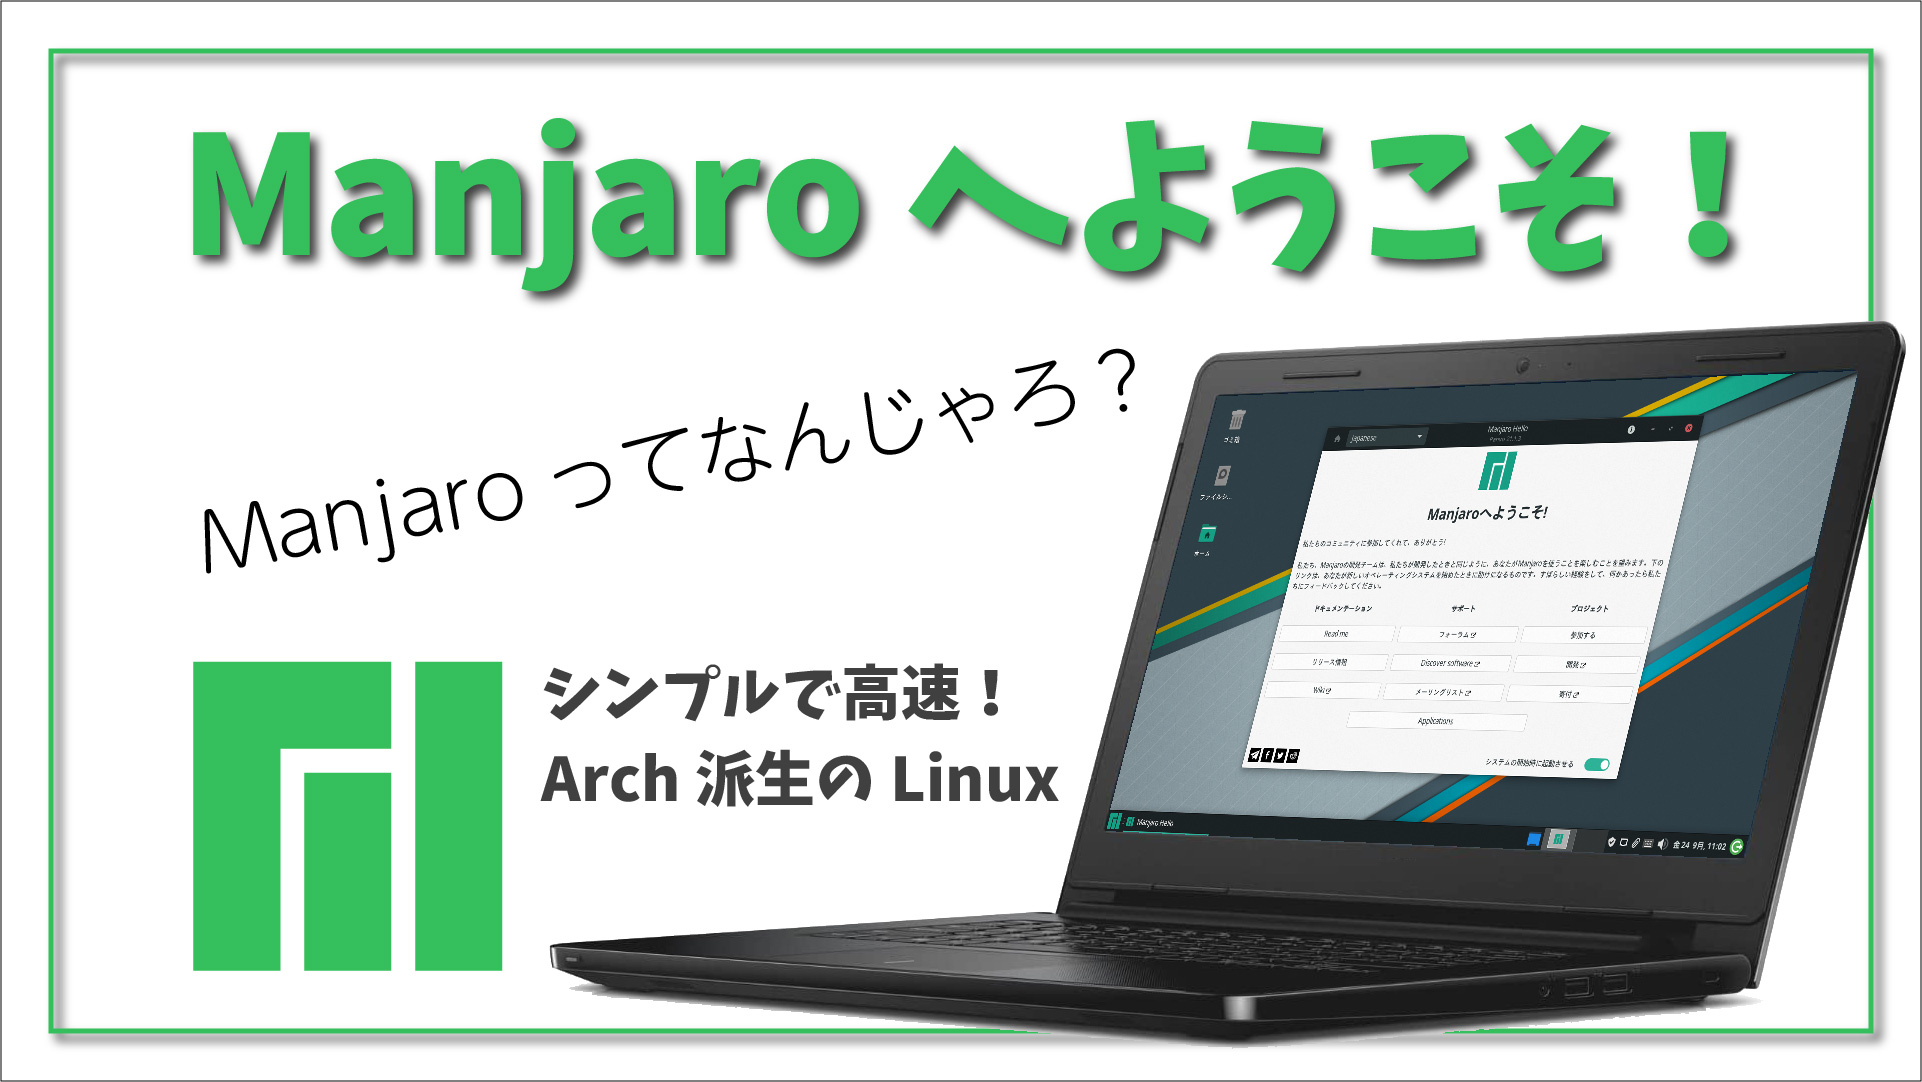 【Manjaro ってなんじゃろ？】Arch Linux 派生の初心者向け Linux ディストリビューションをざっくり紹介してみます。